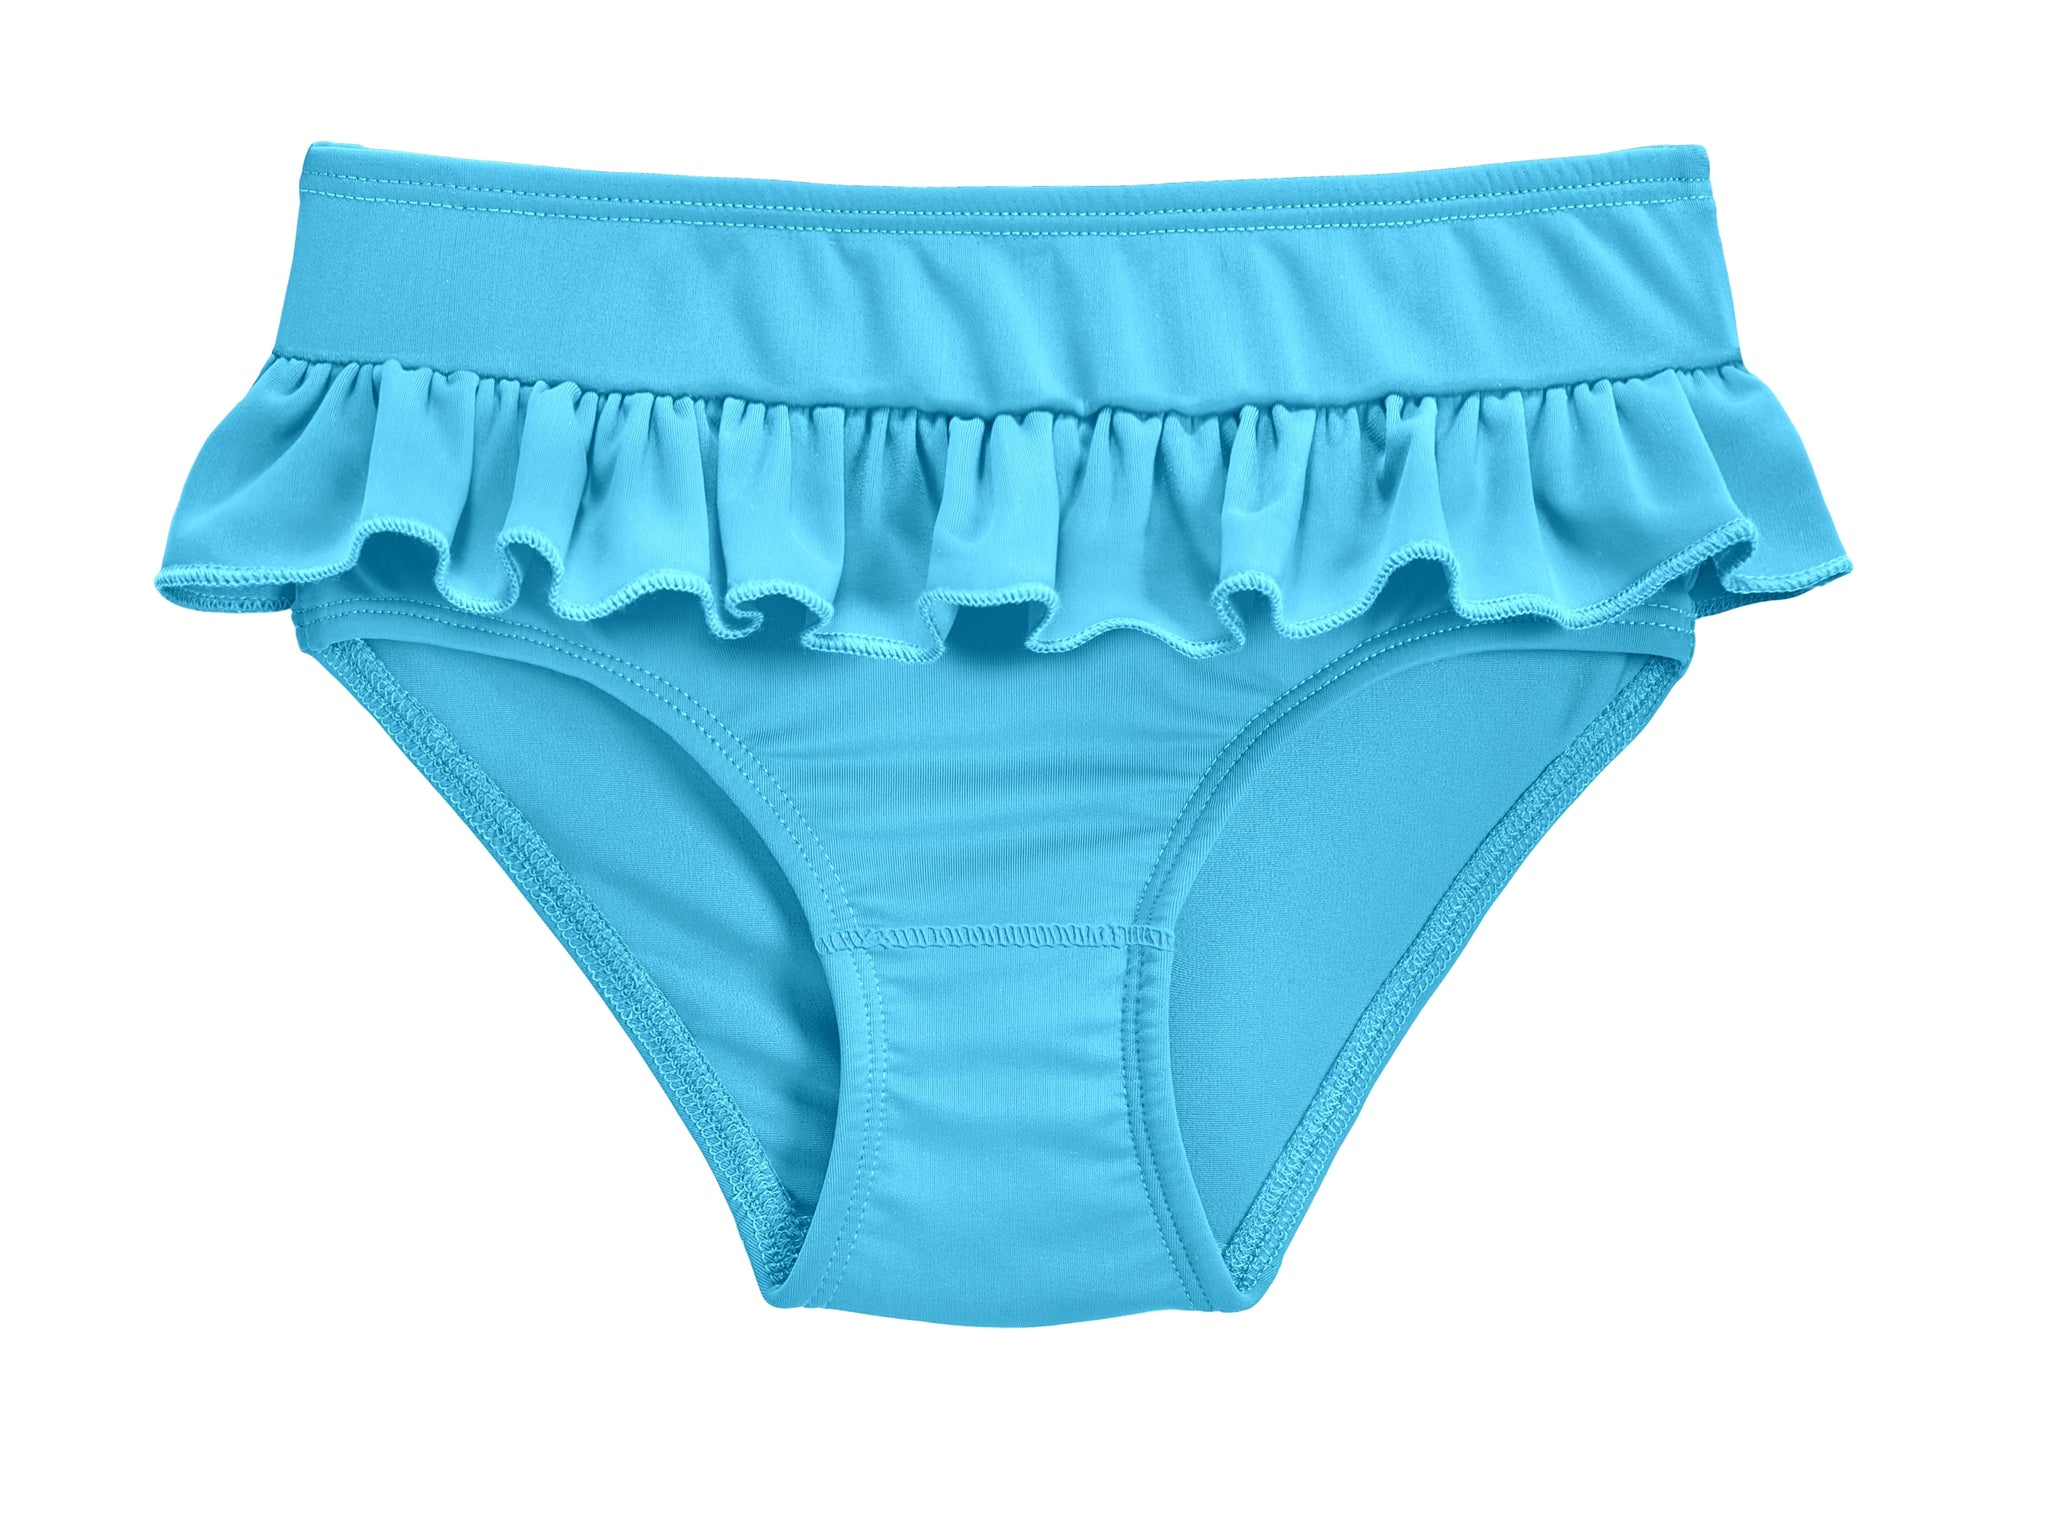 City Threads Girls' Certified Organic Cotton Briefs Underwear Made